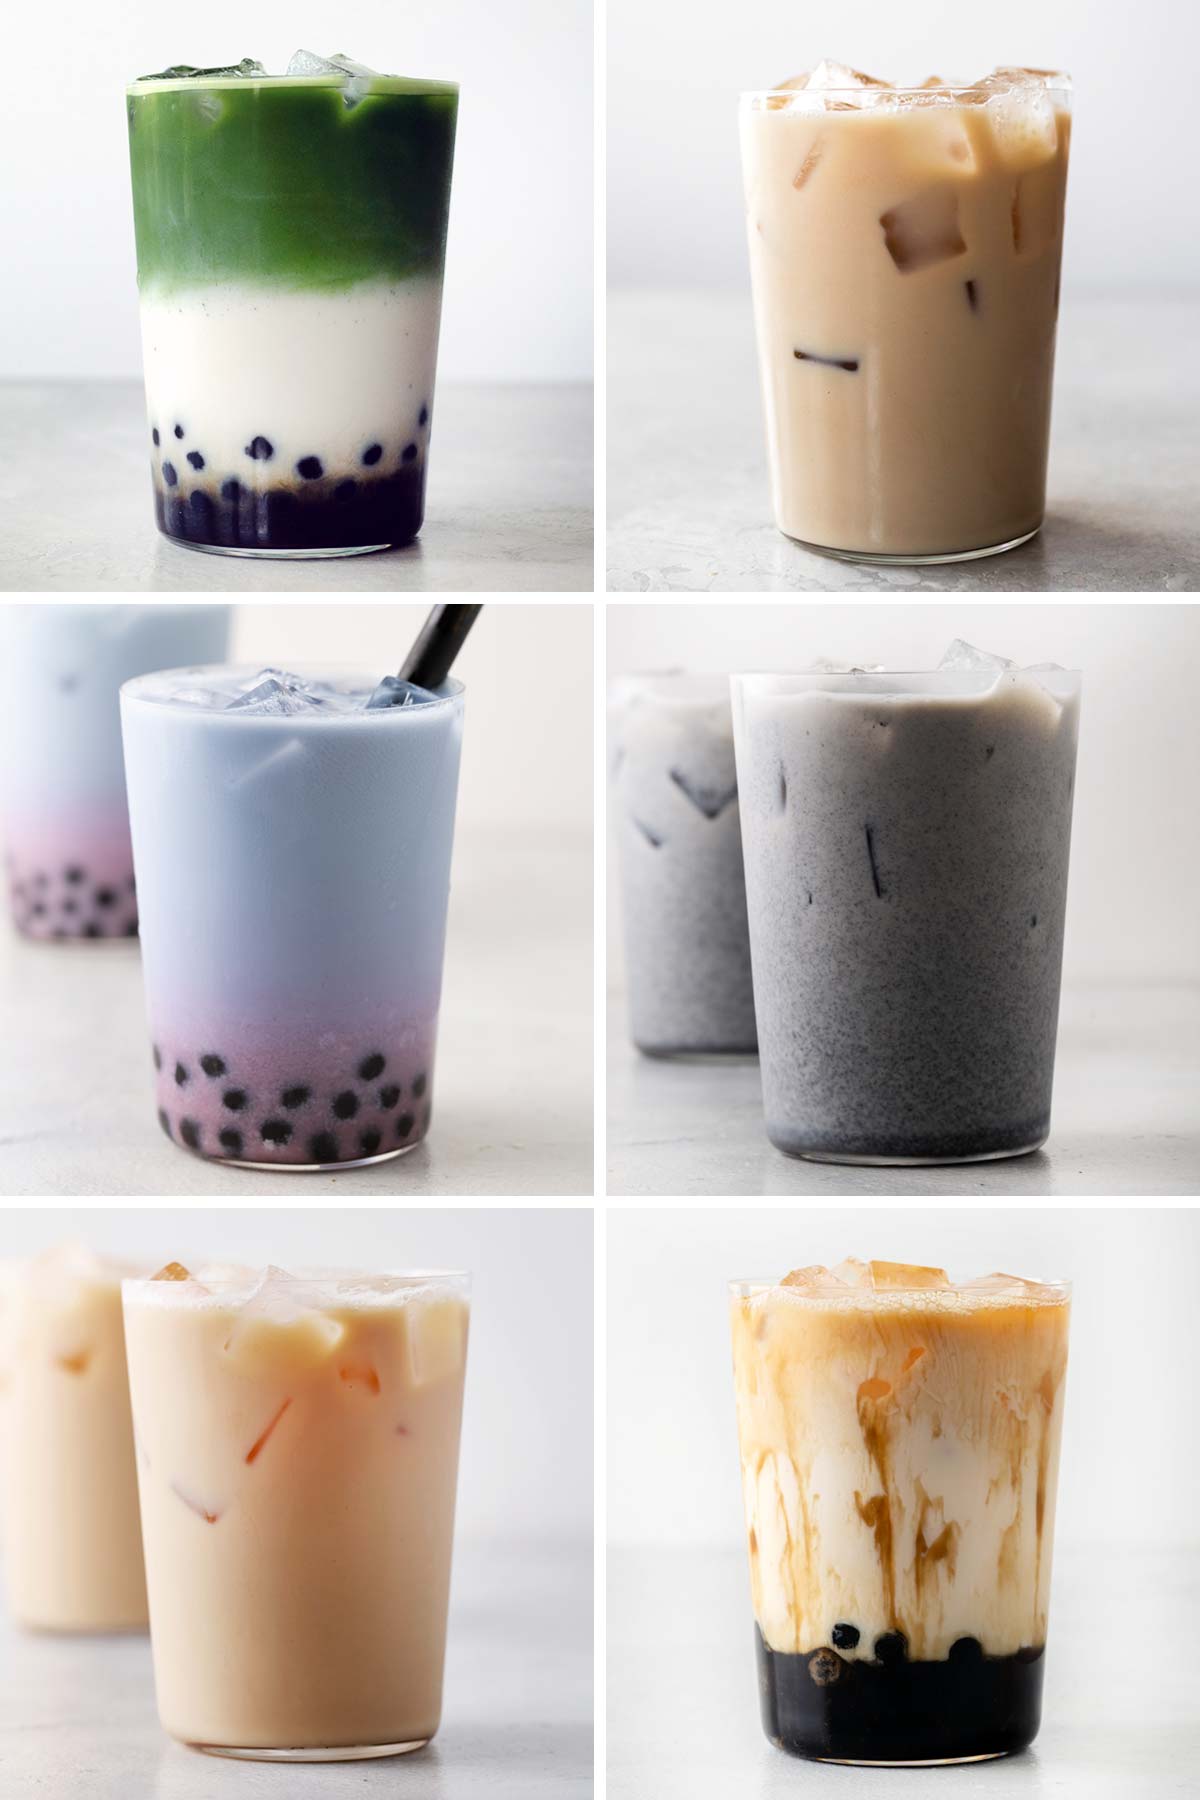 6 photos of milk tea drinks on a grid.